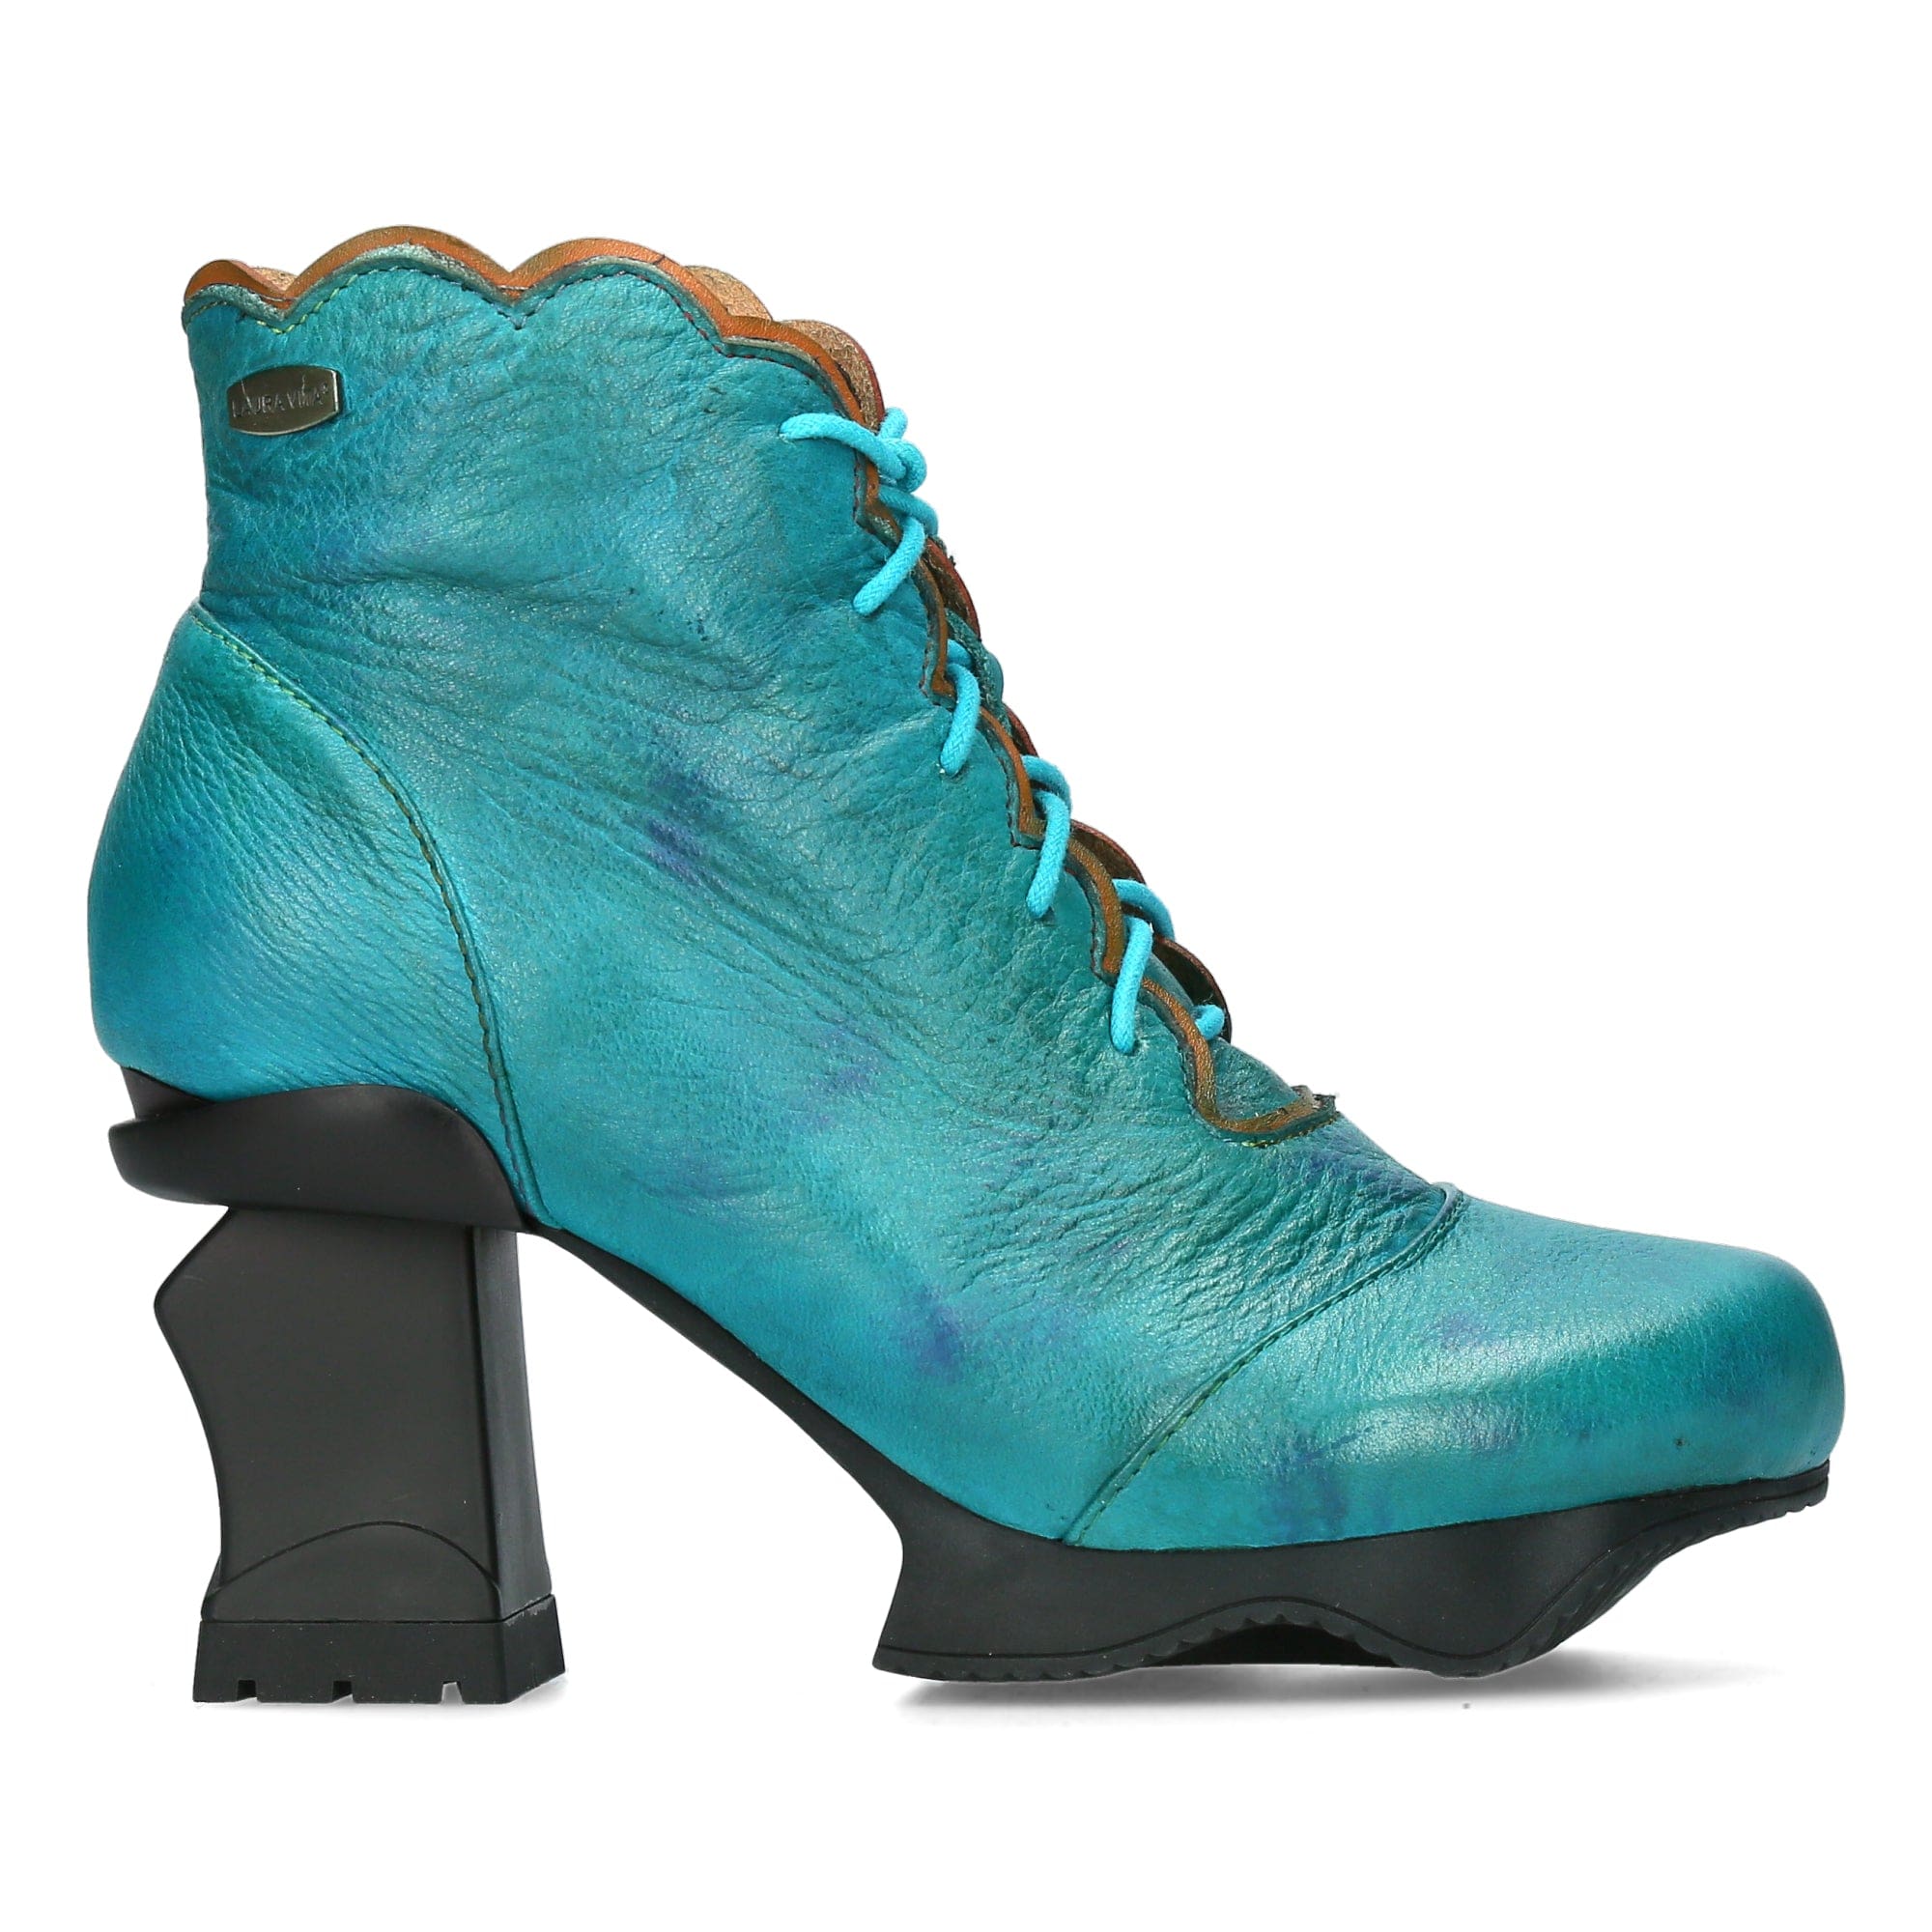 Schoen FRCIDAO 223 - 35 / Turquoise Laarzen